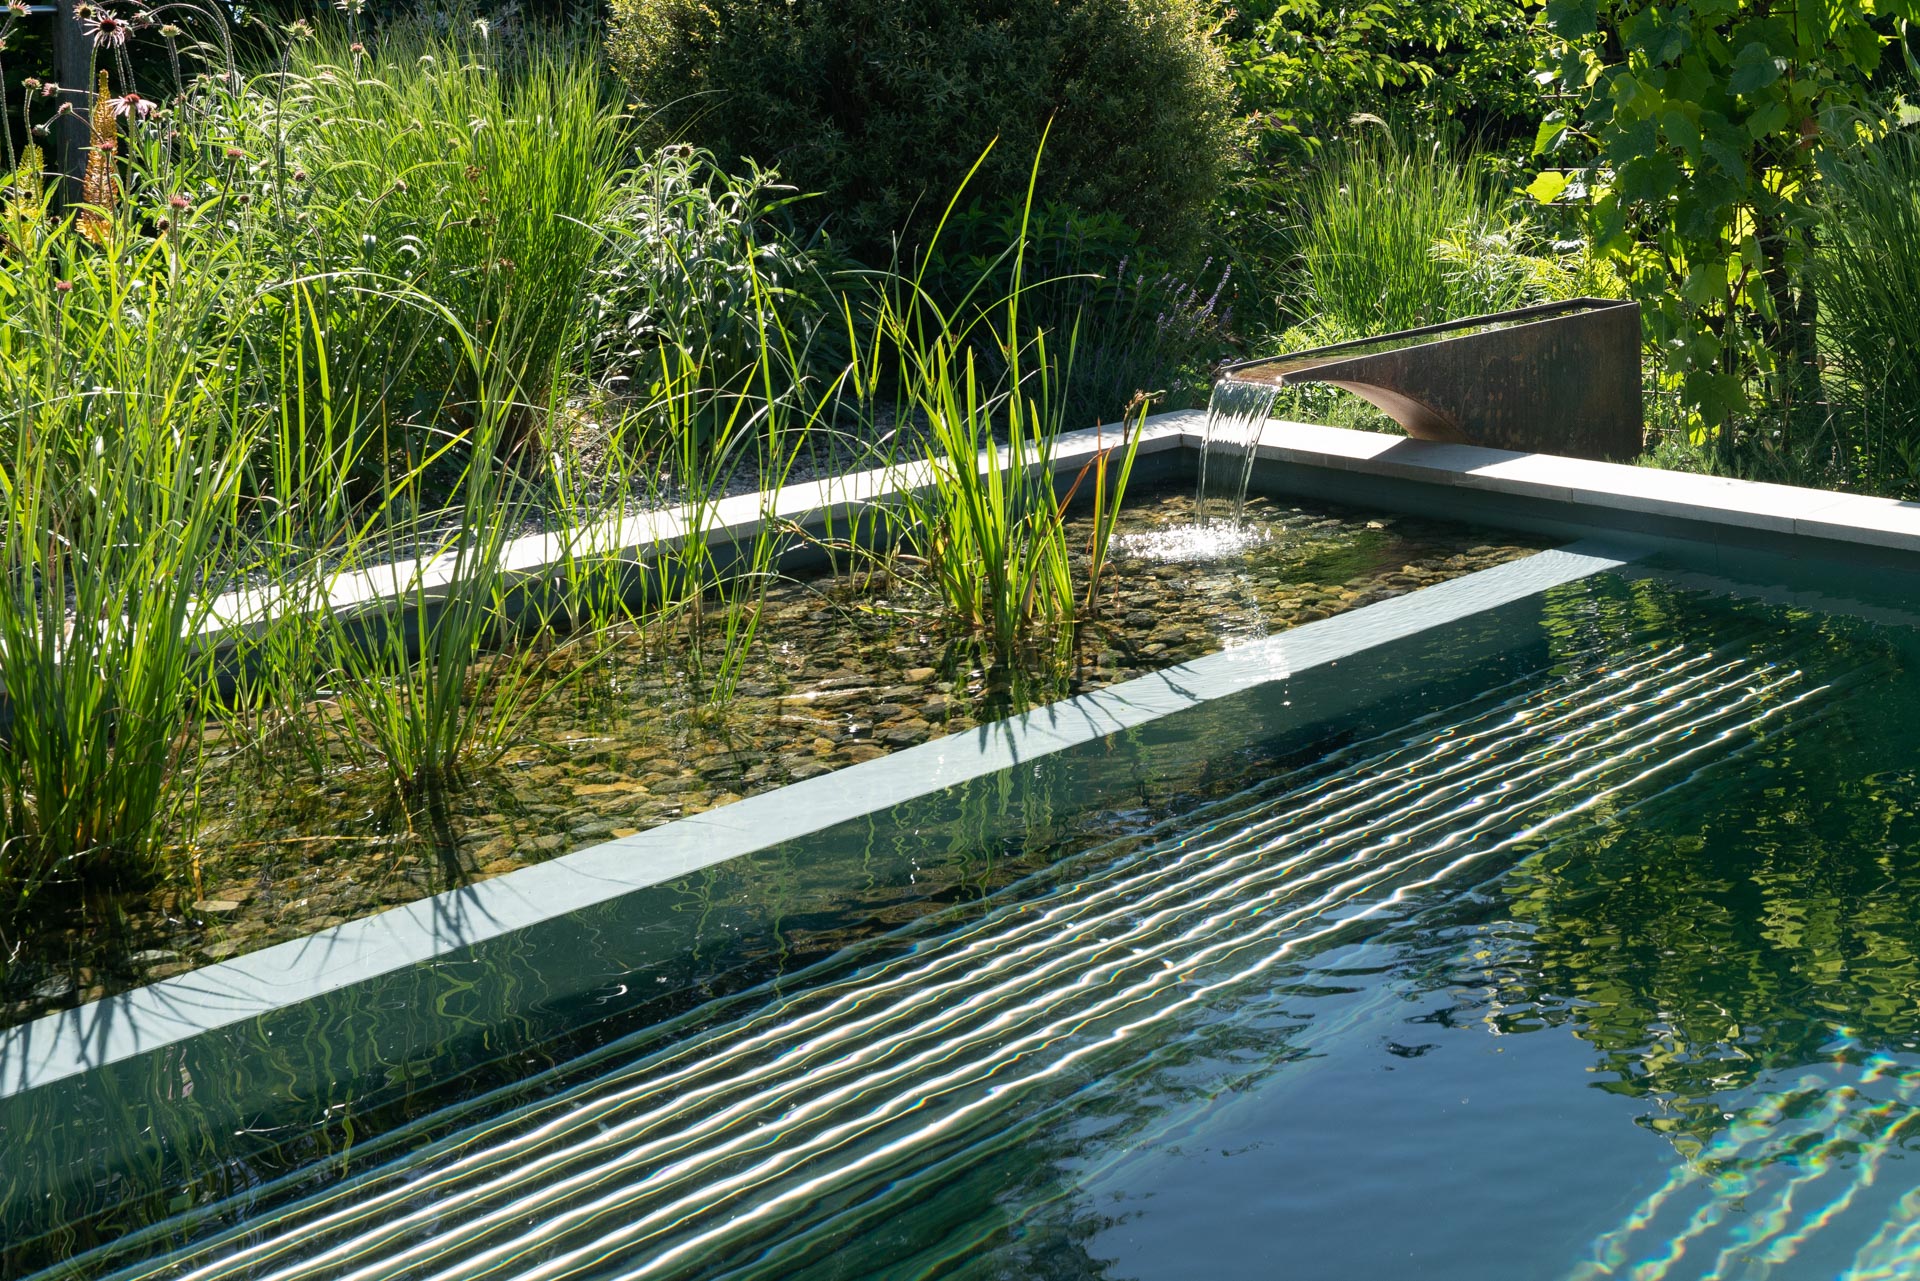 Naturpool: Ein natürlicher Pool im Garten, der ohne Chemikalien auskommt.